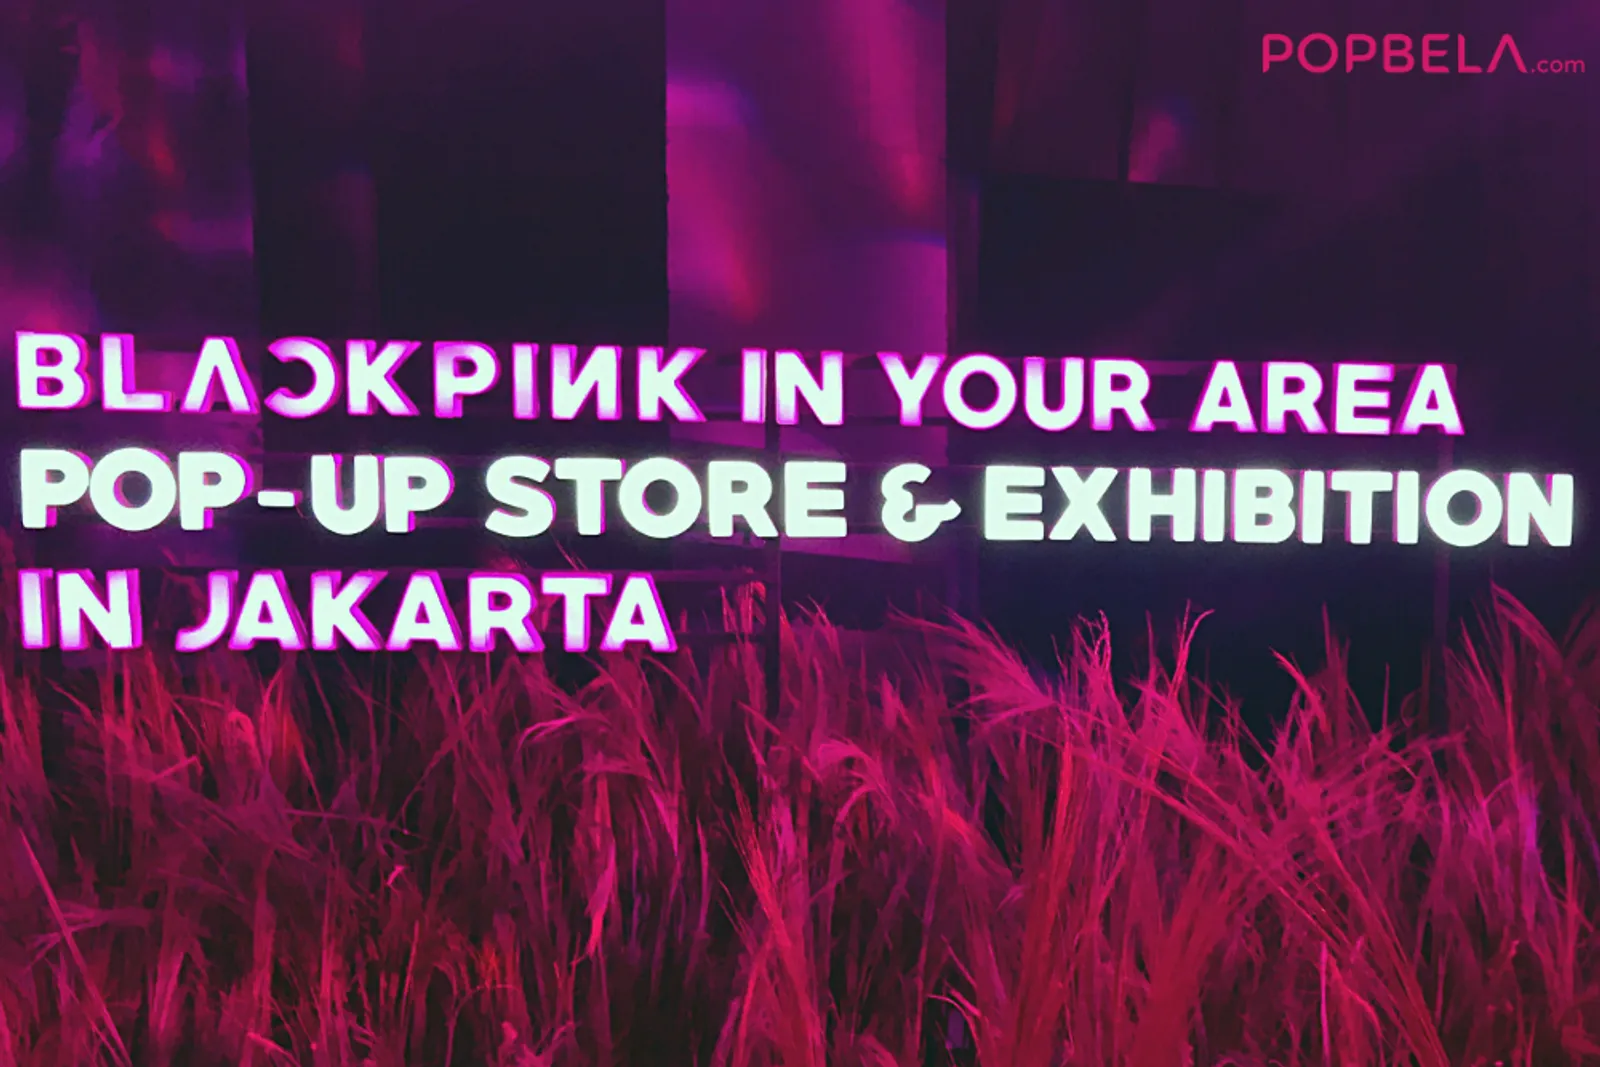 Pertama di Indonesia! Ini Keseruan BLACKPINK Pop-Up Store & Exhibition